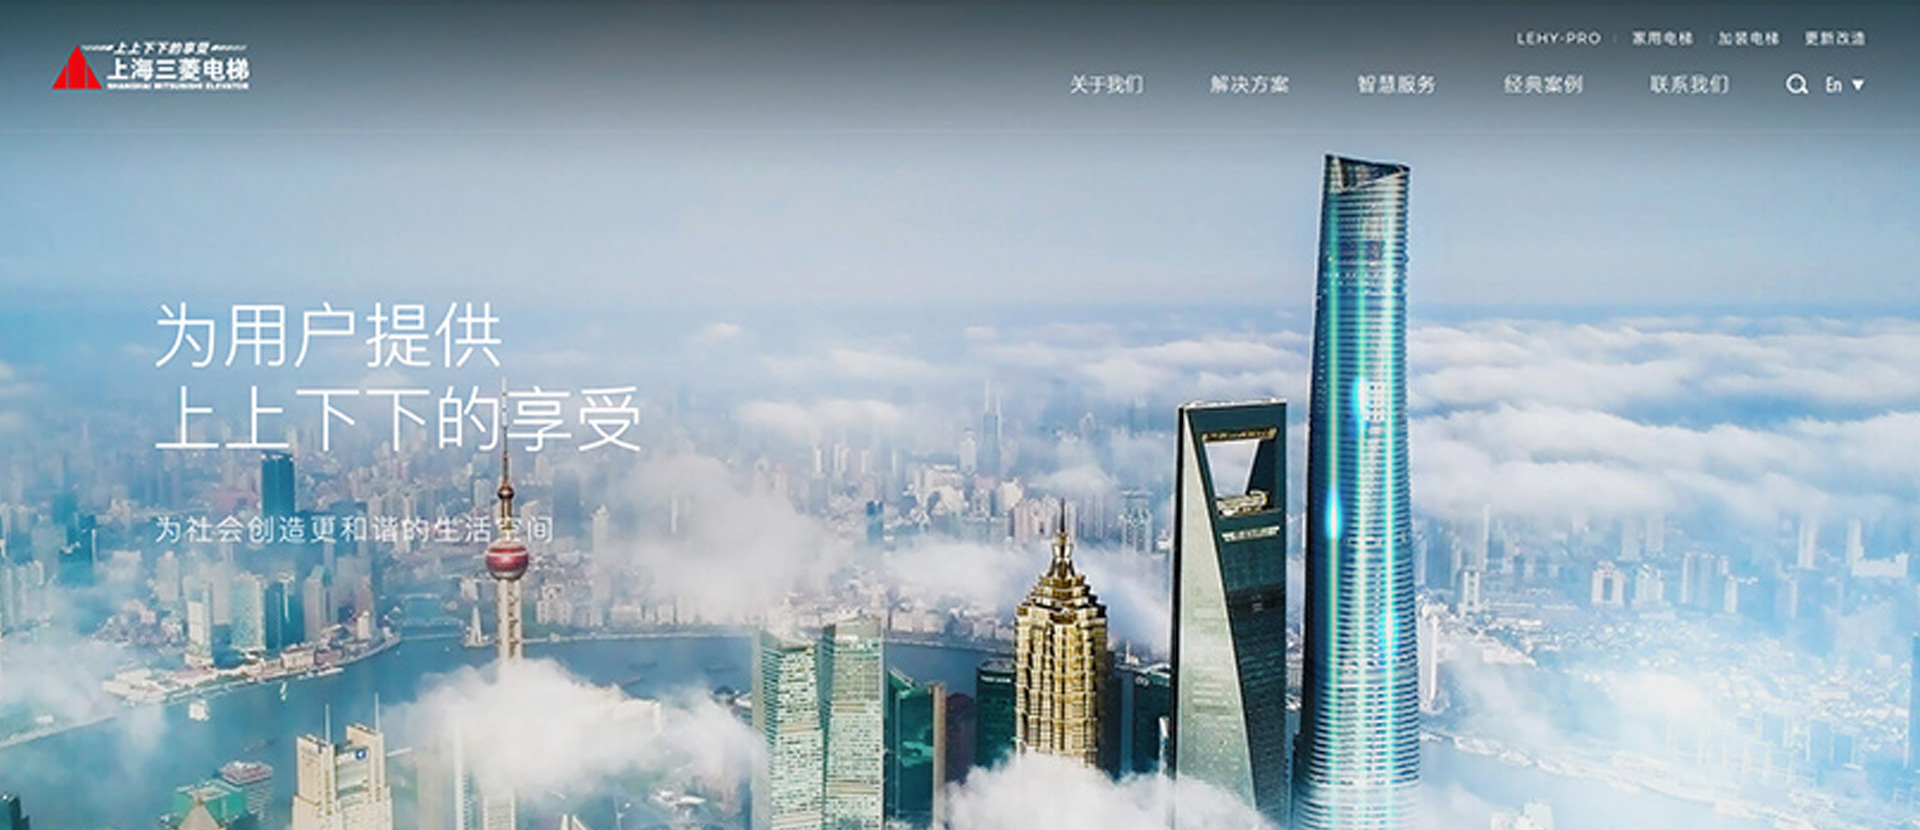 上海三菱电梯官网建设开发设计效果图-2